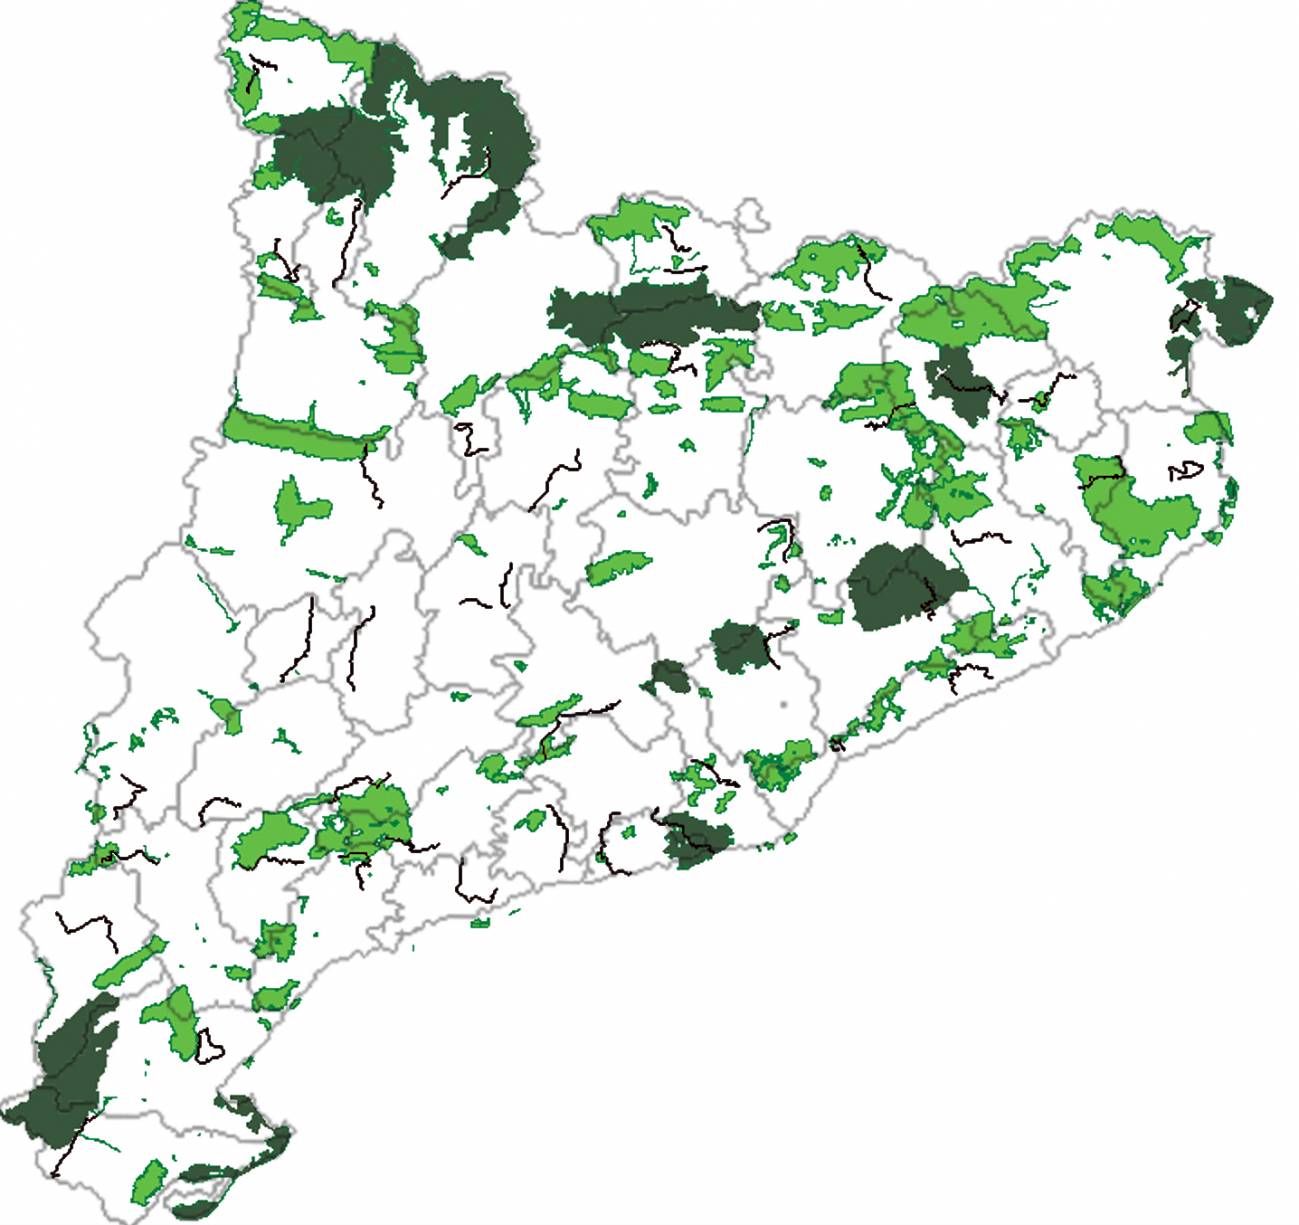 Localización de las áreas protegidas en Cataluña. Imagen: Universidad de barcelona